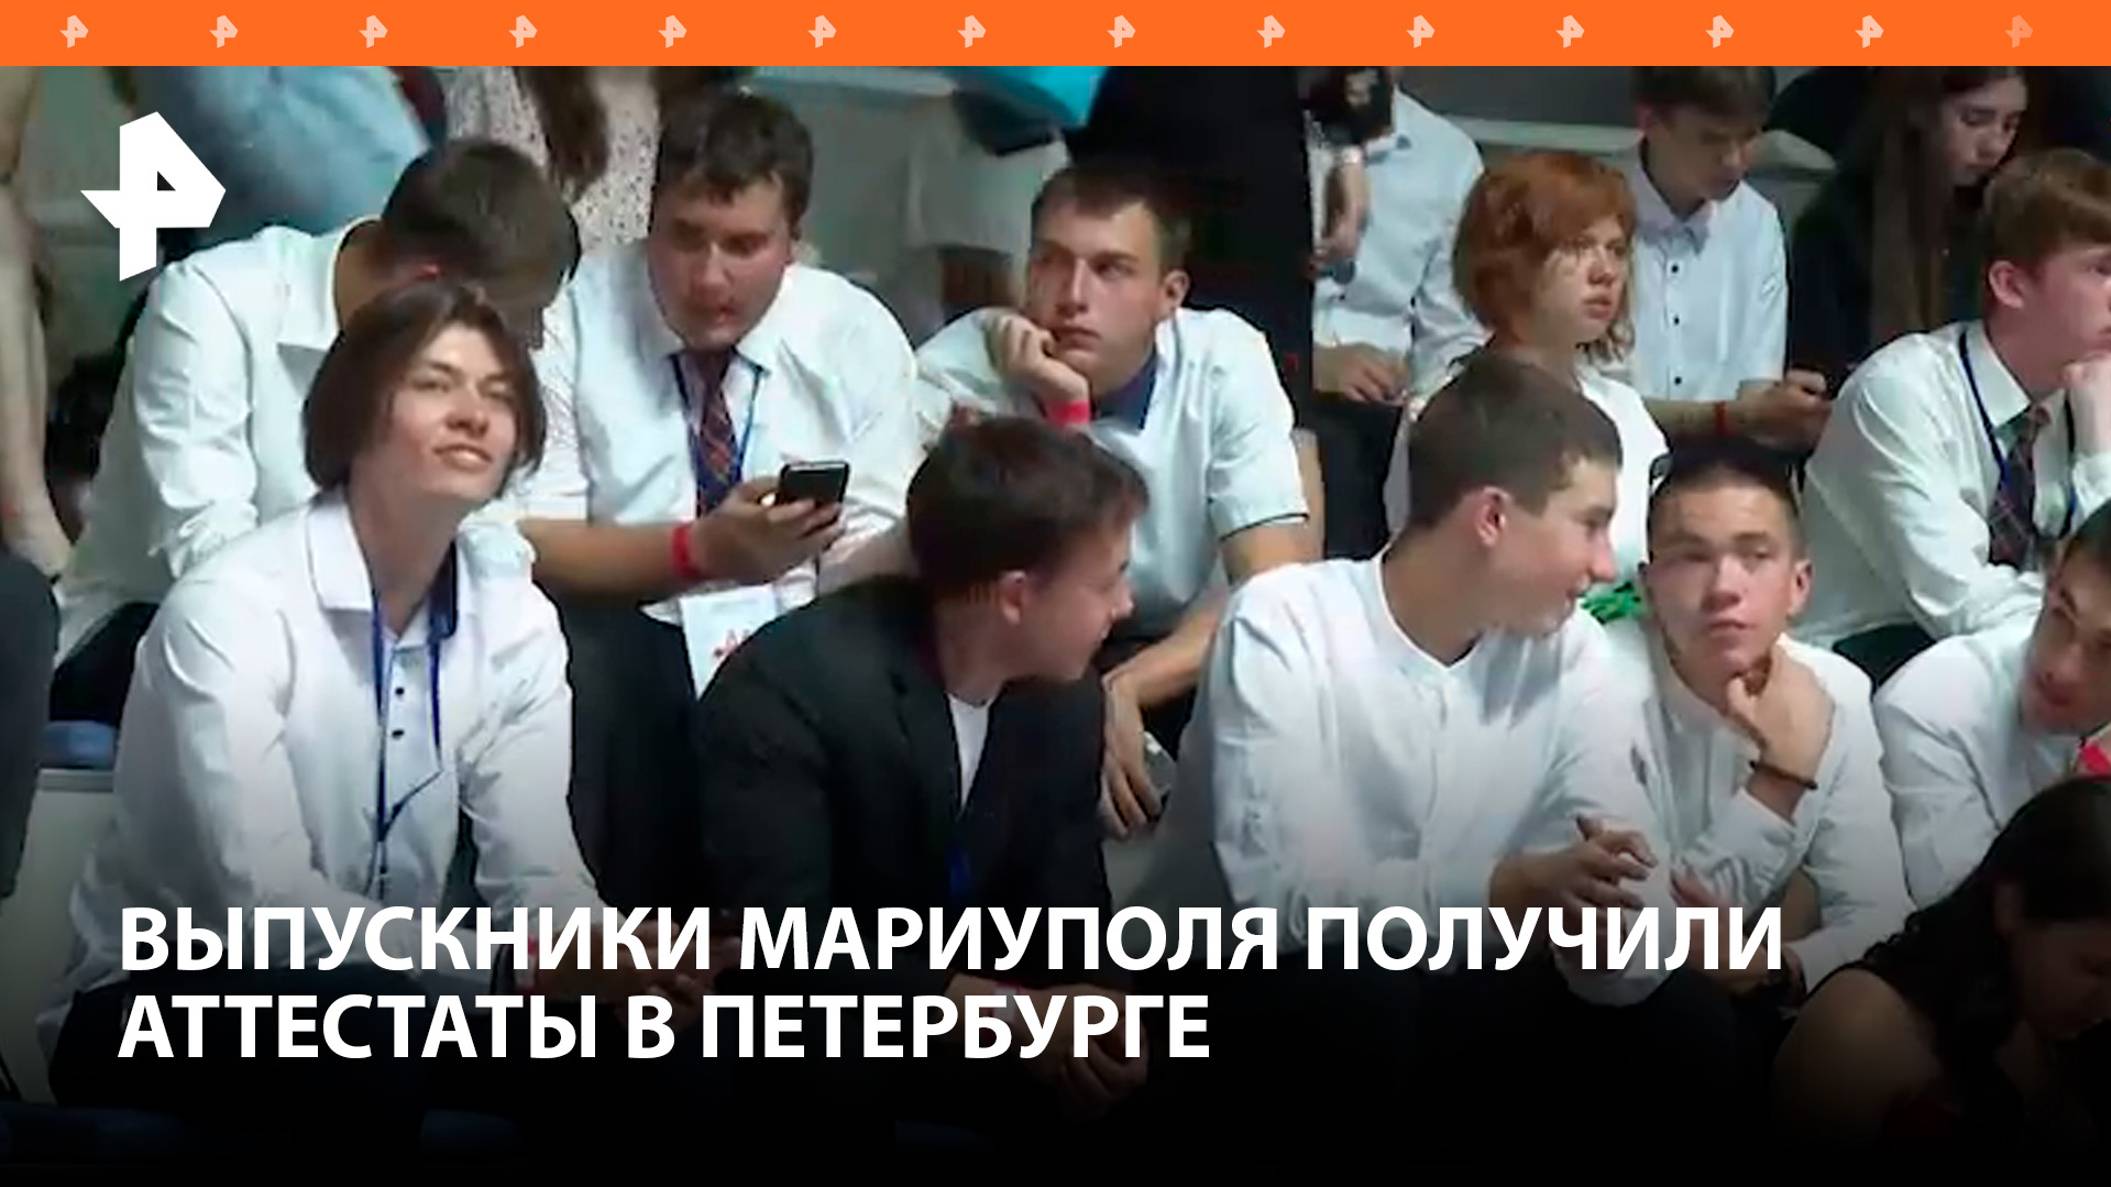 Шаг во взрослую жизнь: выпускники Мариуполя получили аттестаты в Петербурге